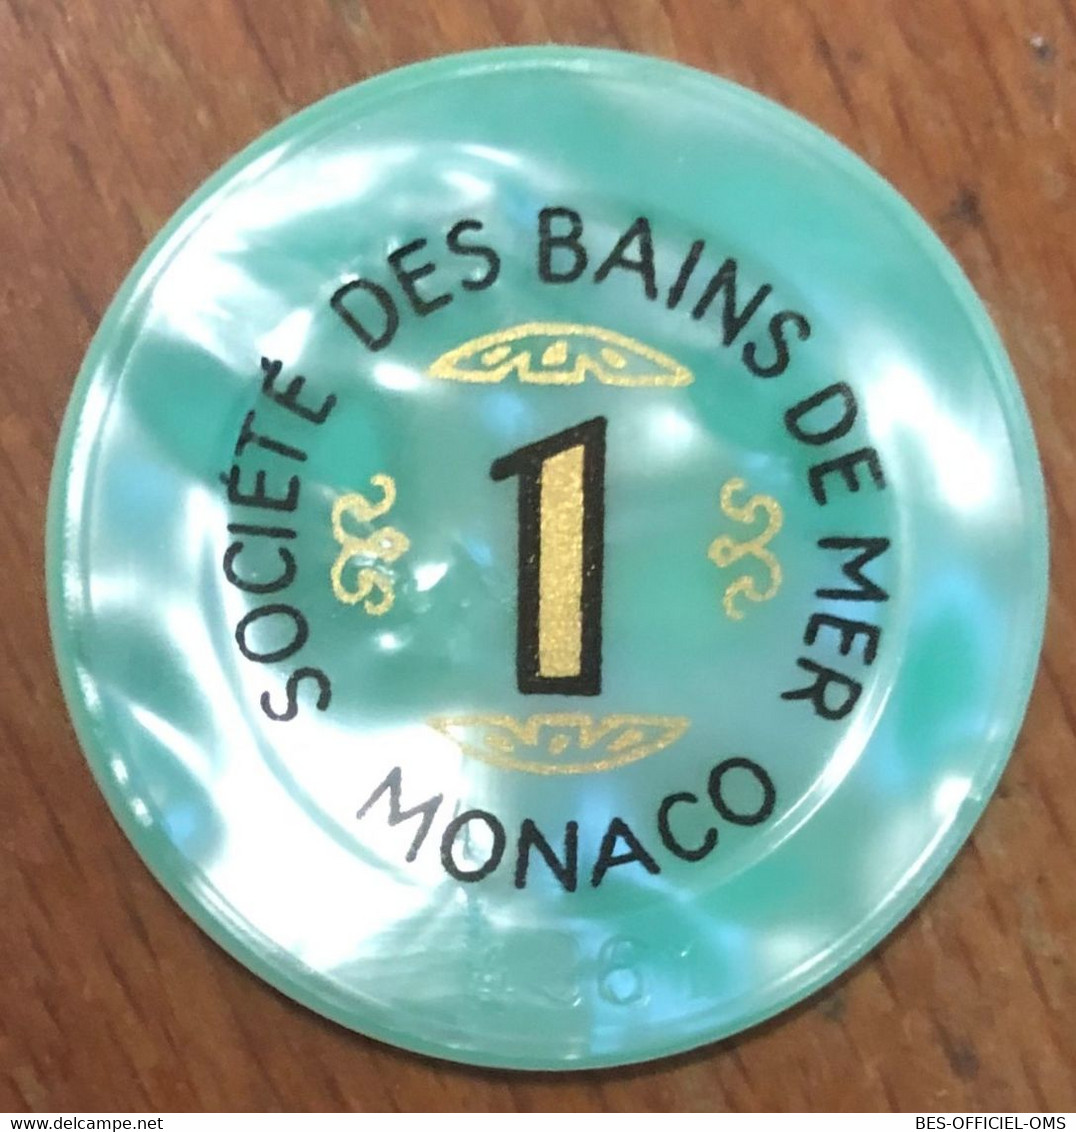 98 MONACO MONTE-CARLO CASINO SOCIÉTÉ DES BAINS DE MER JETON 1 FRANC N° 4967 TOKENS COINS CHIPS - Casino